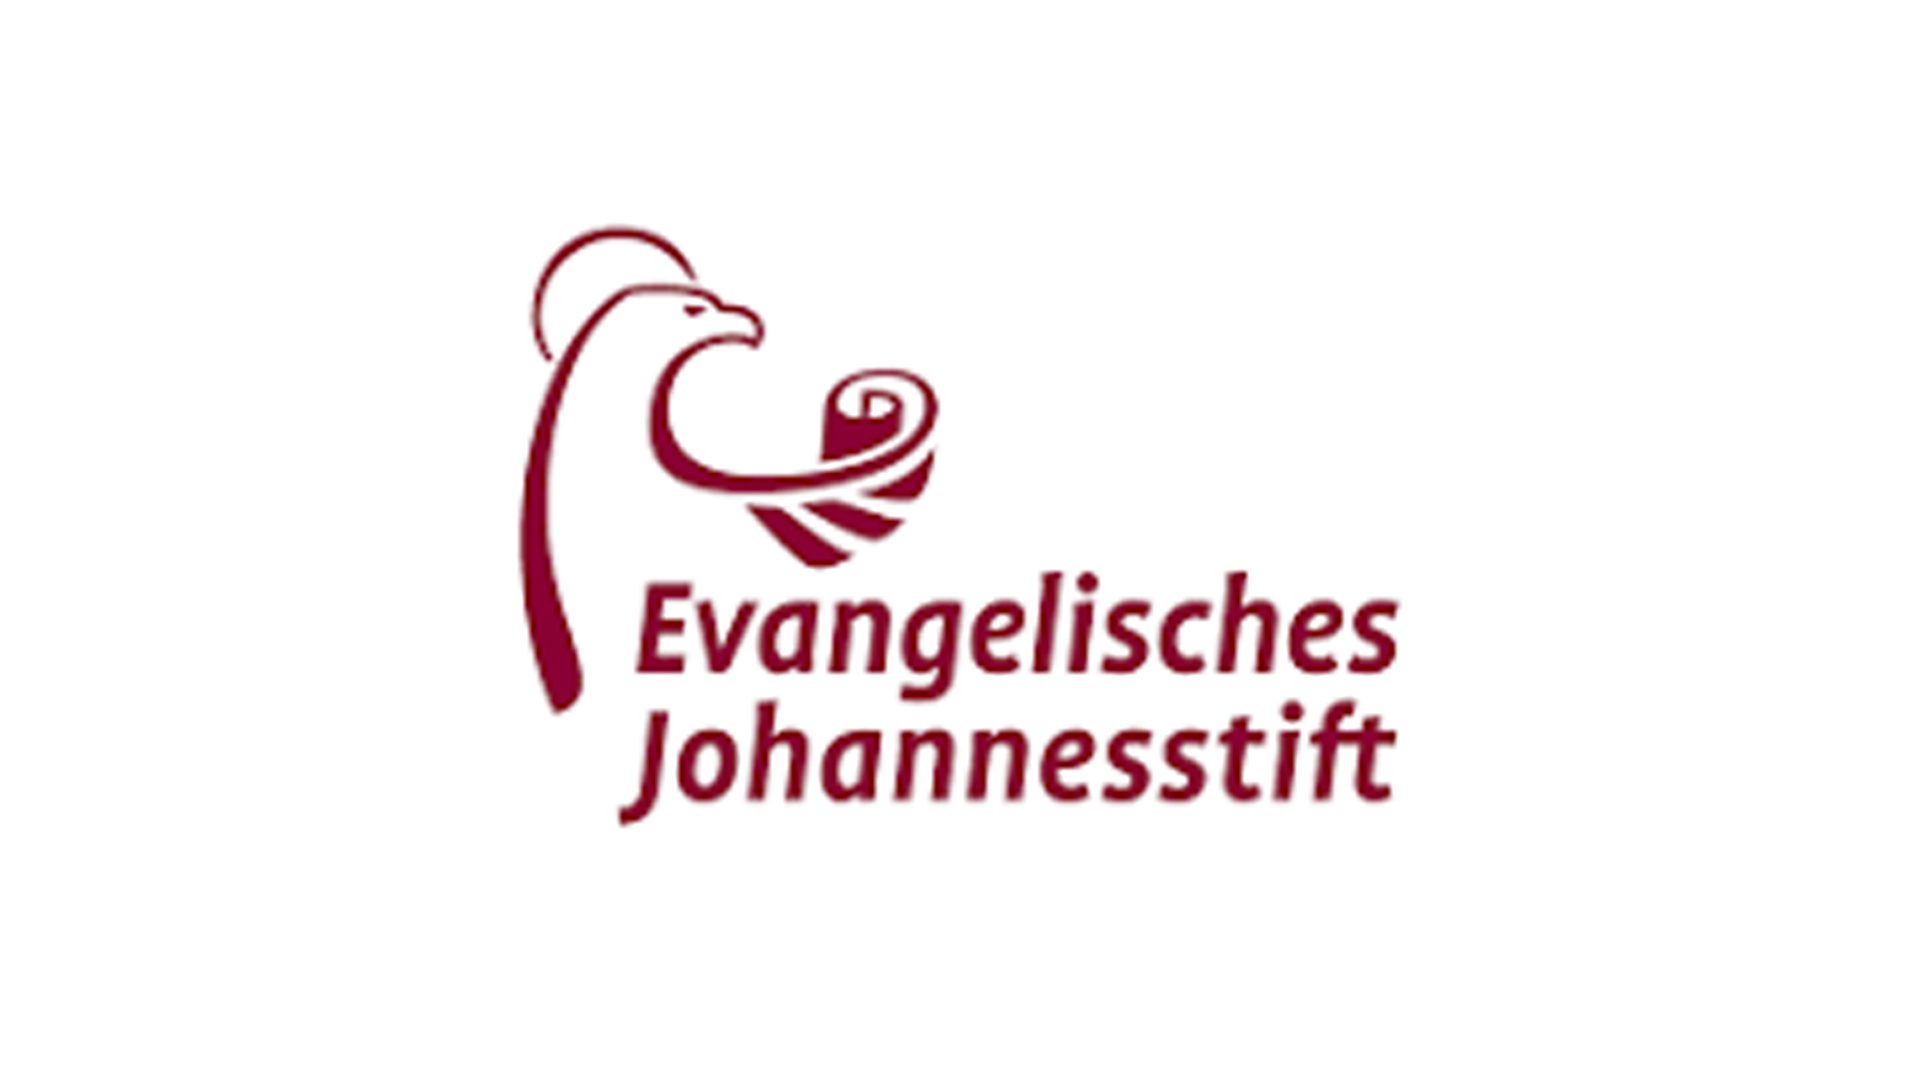 kakoii launcht Imagekampagne für das evangelische Johannesstift Berlin